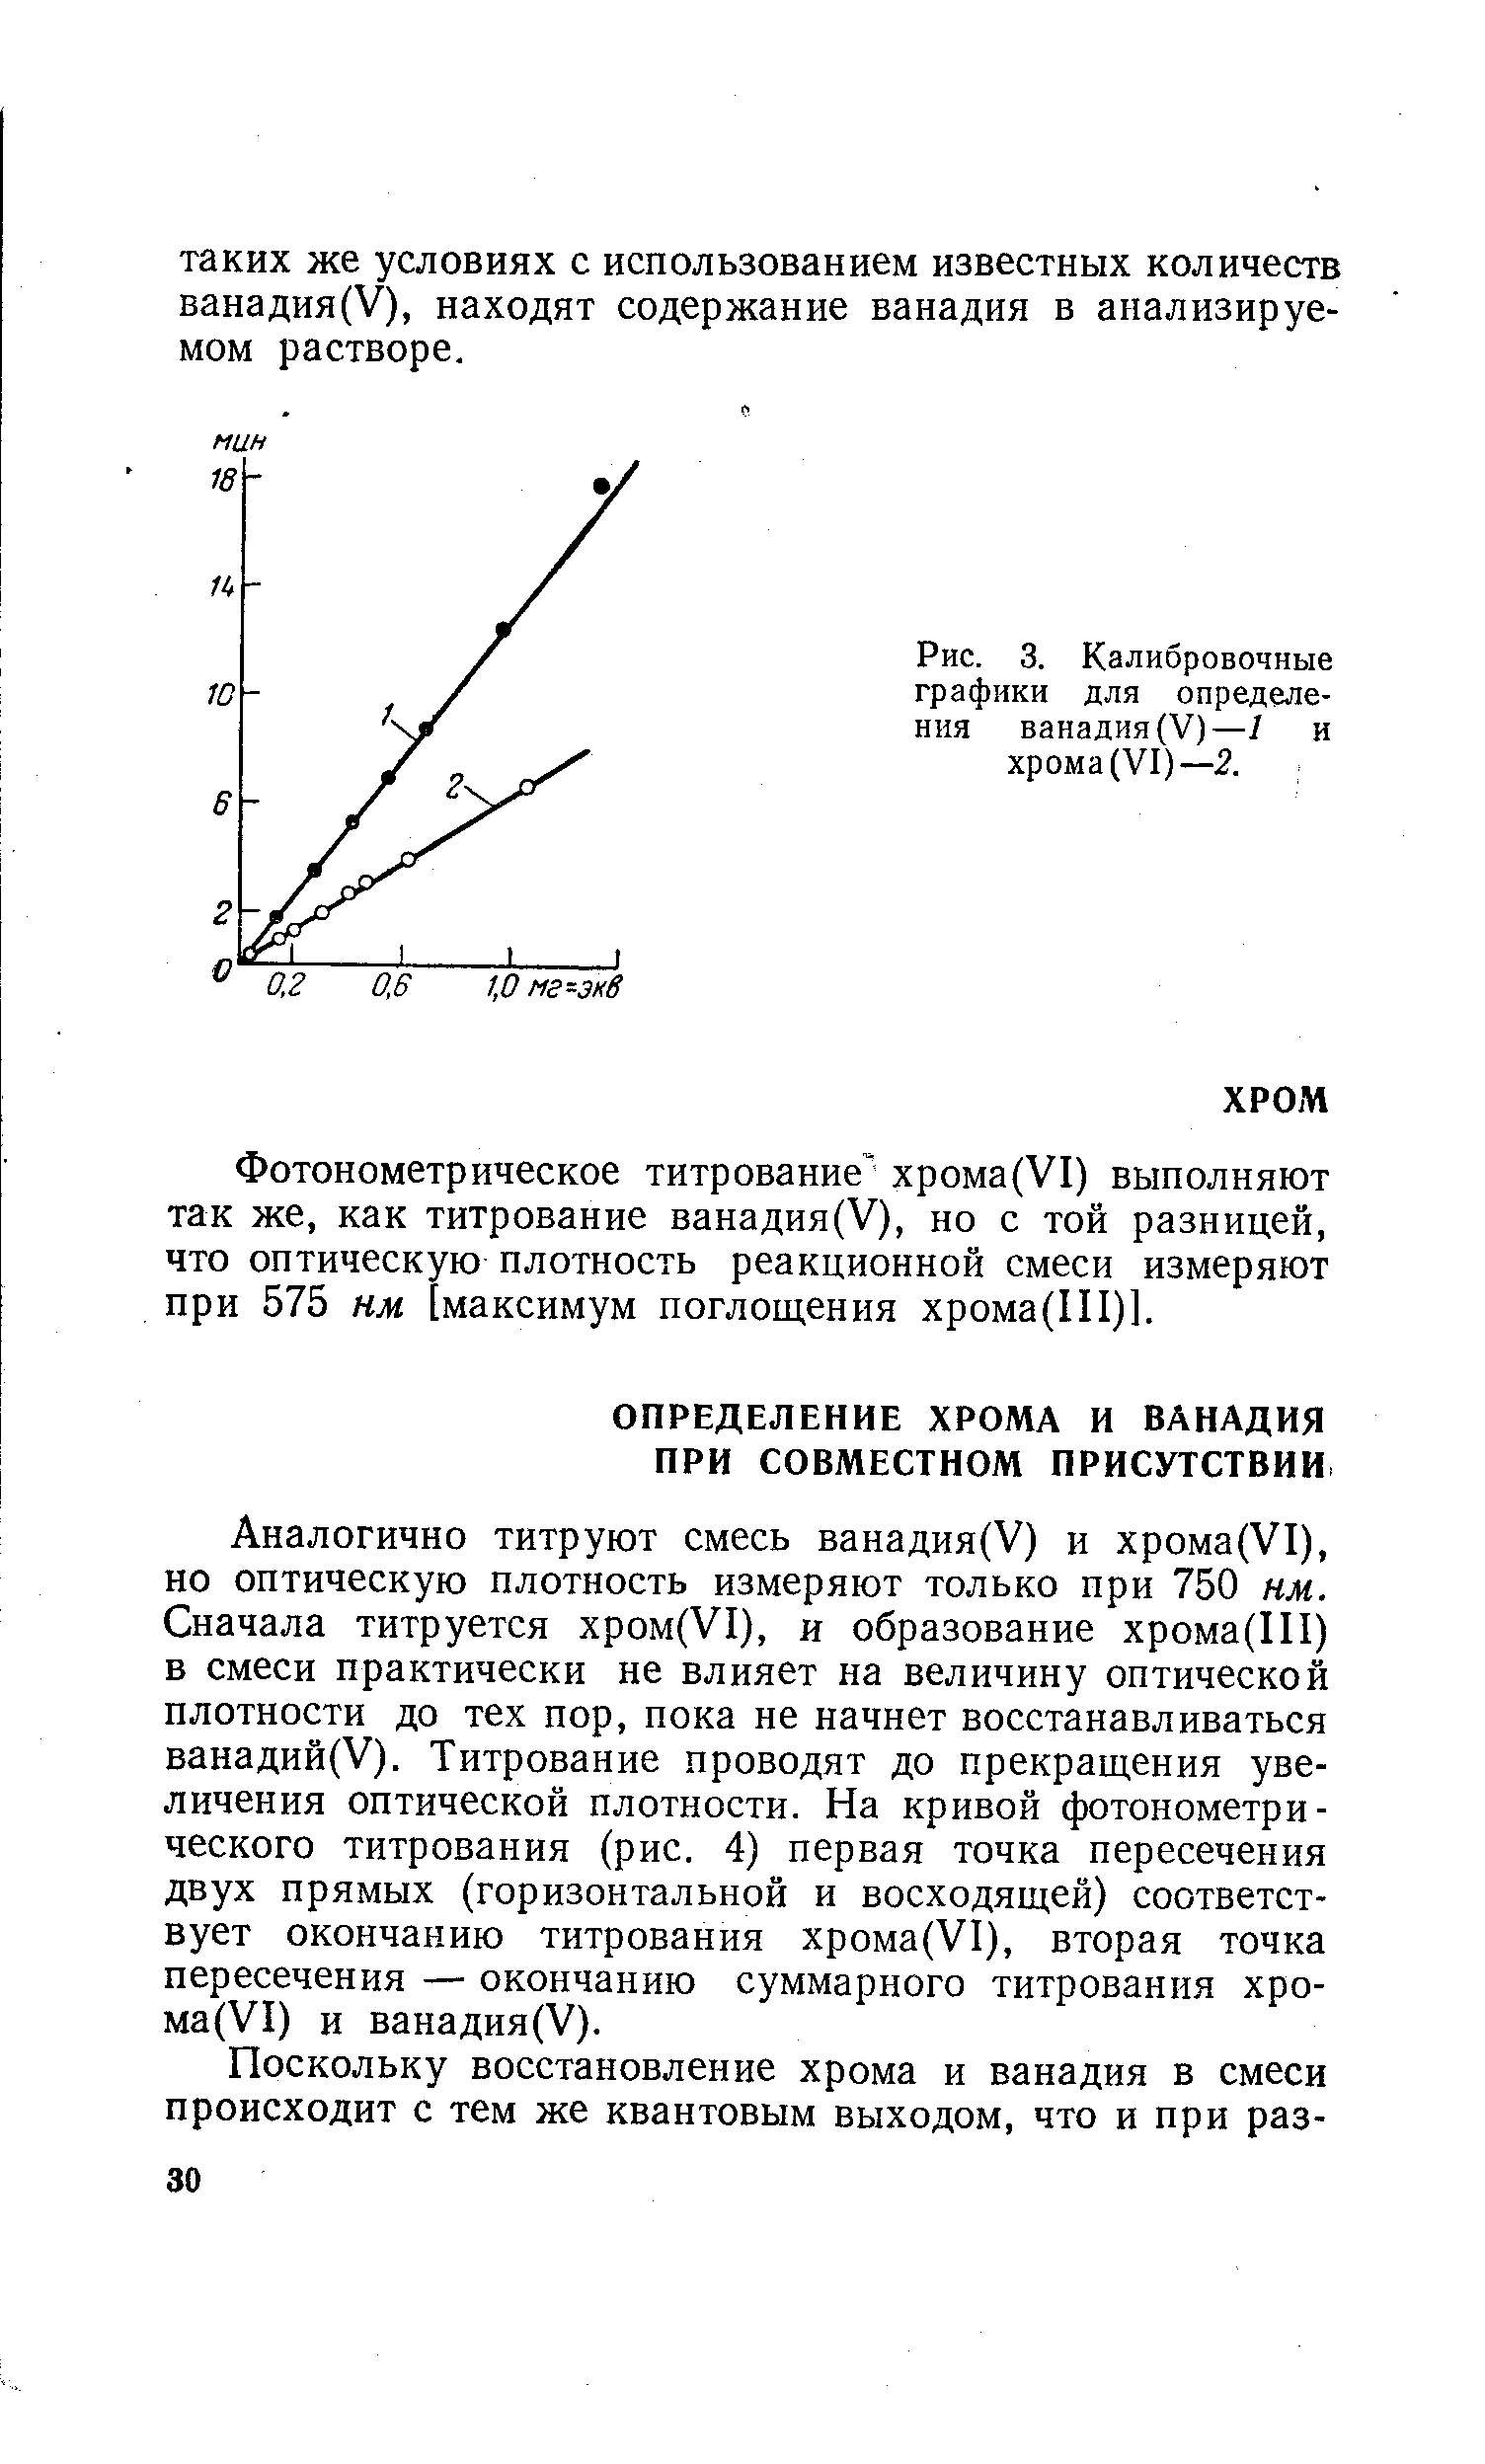 Определение хрома и ванадия при совместном присутствии - Справочник .